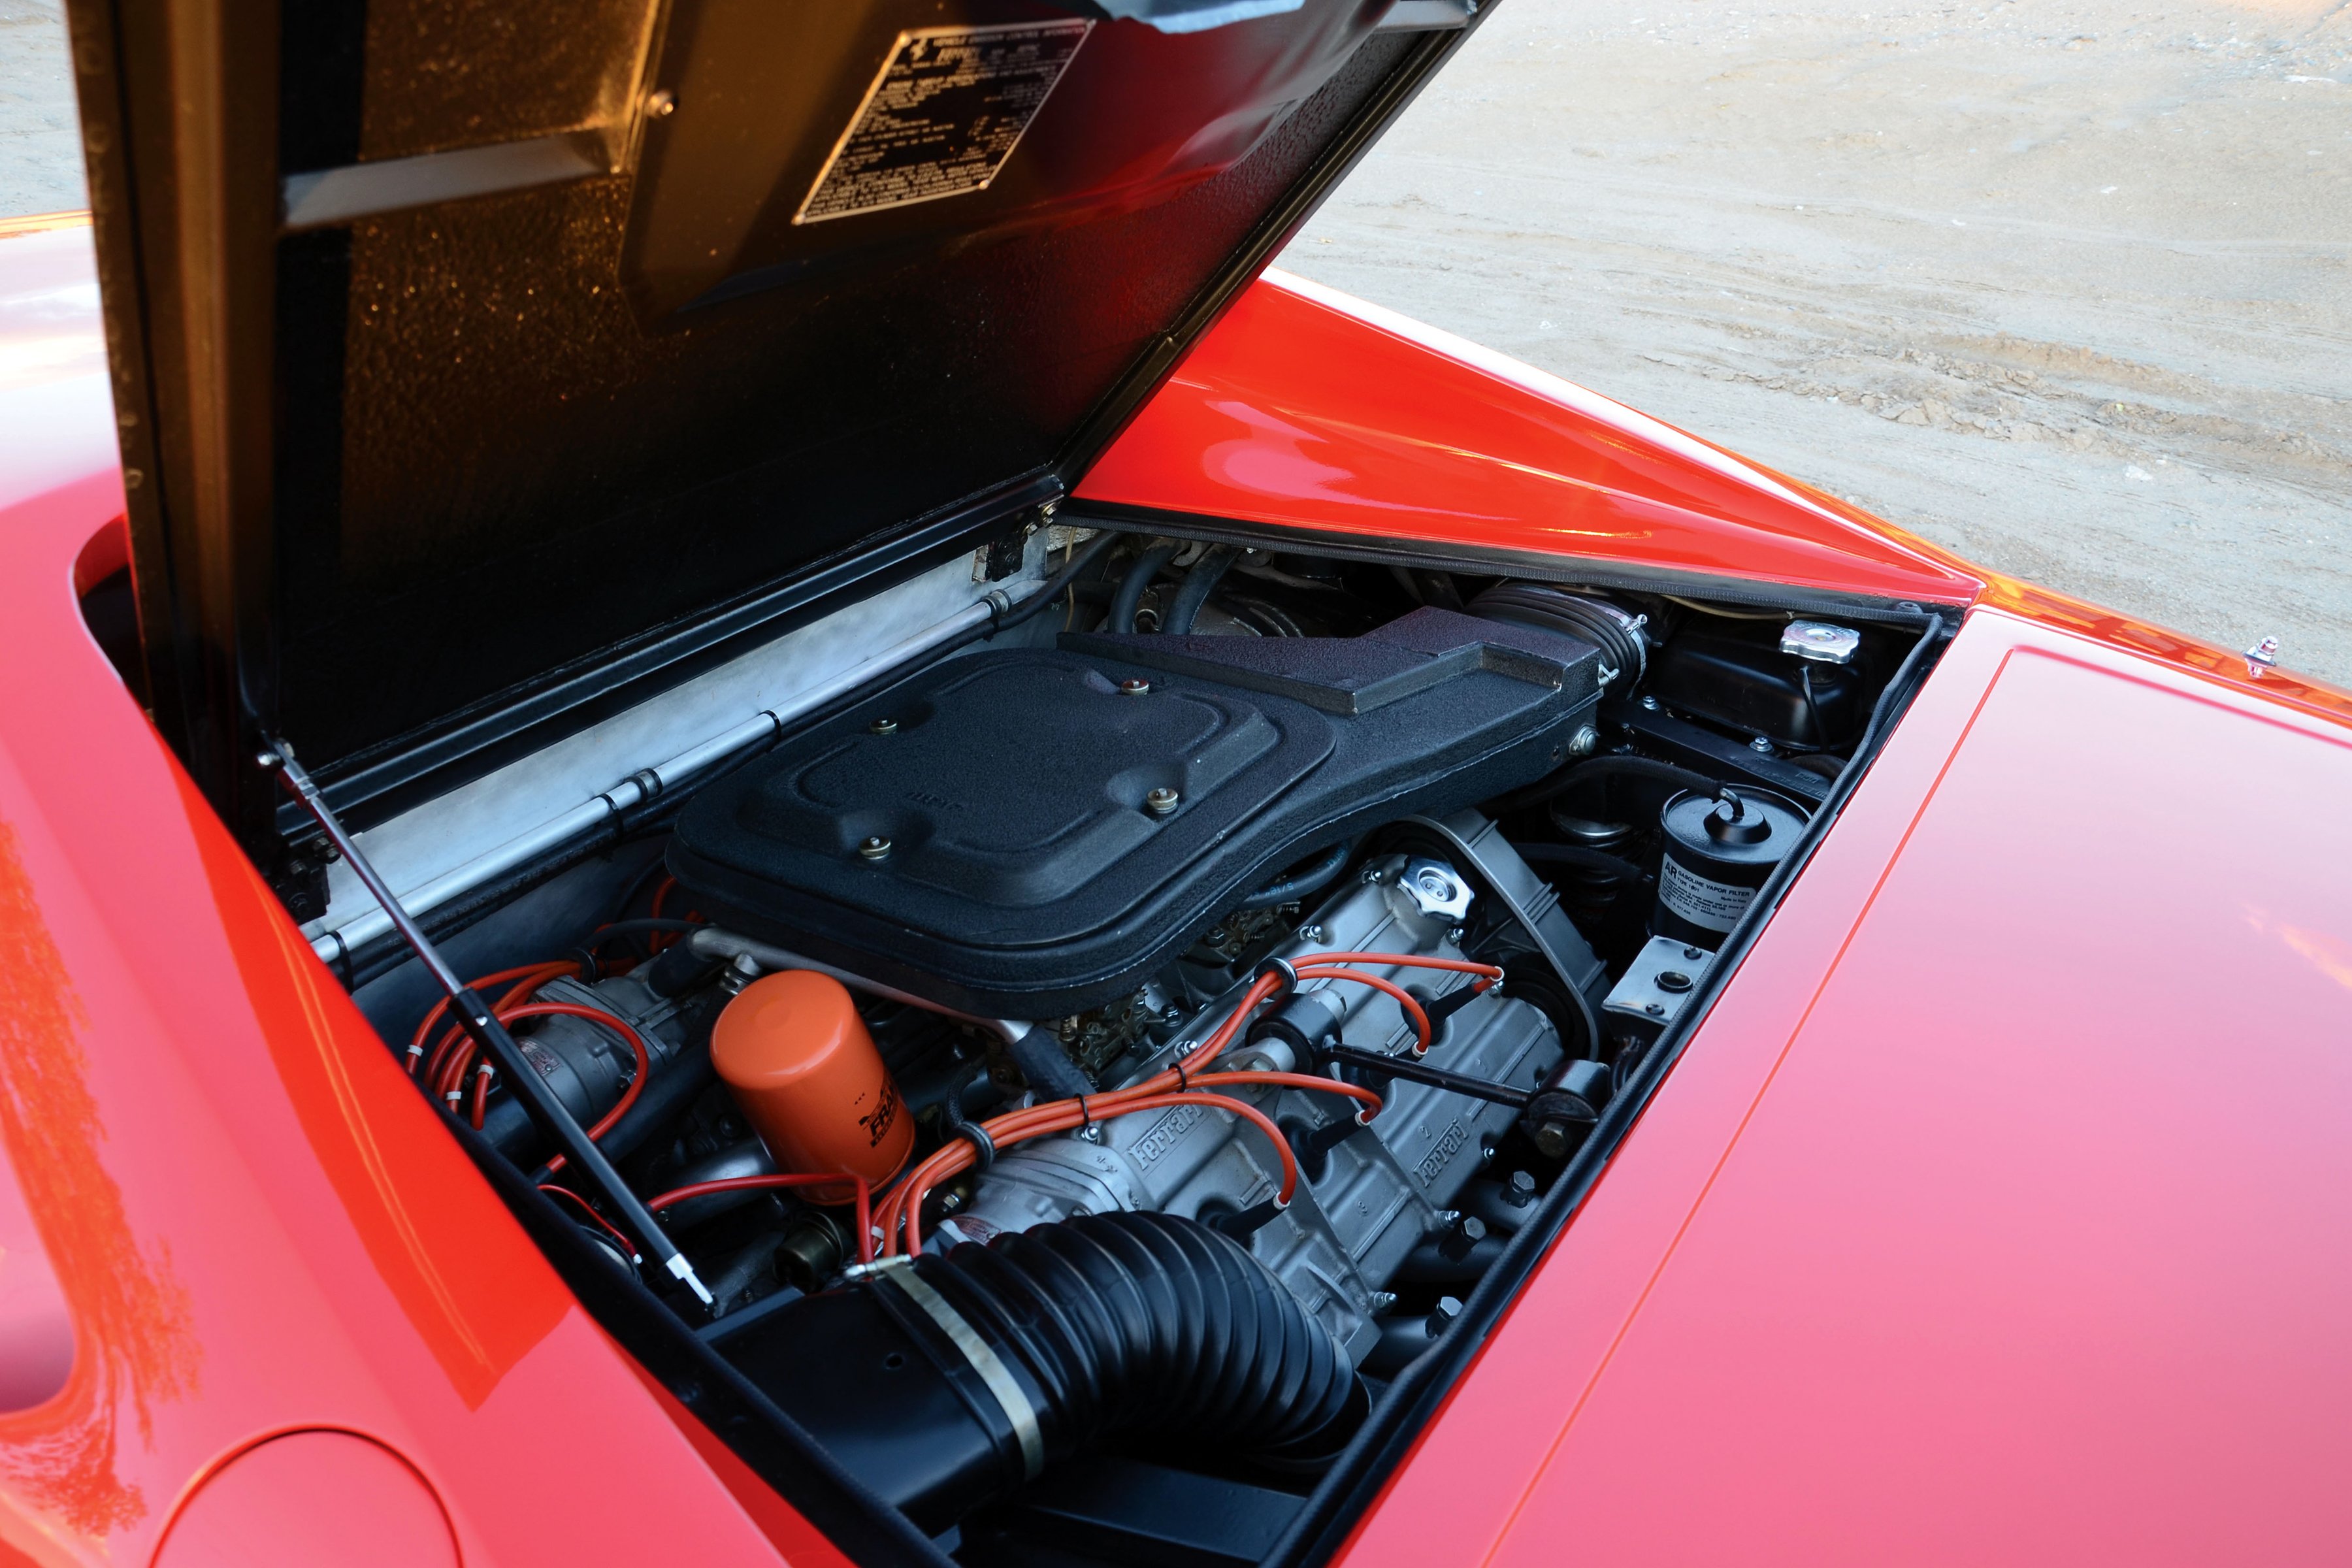 1976 80, Ferrari, Dino, 308, Gt4, Us spec, Supercar Wallpaper